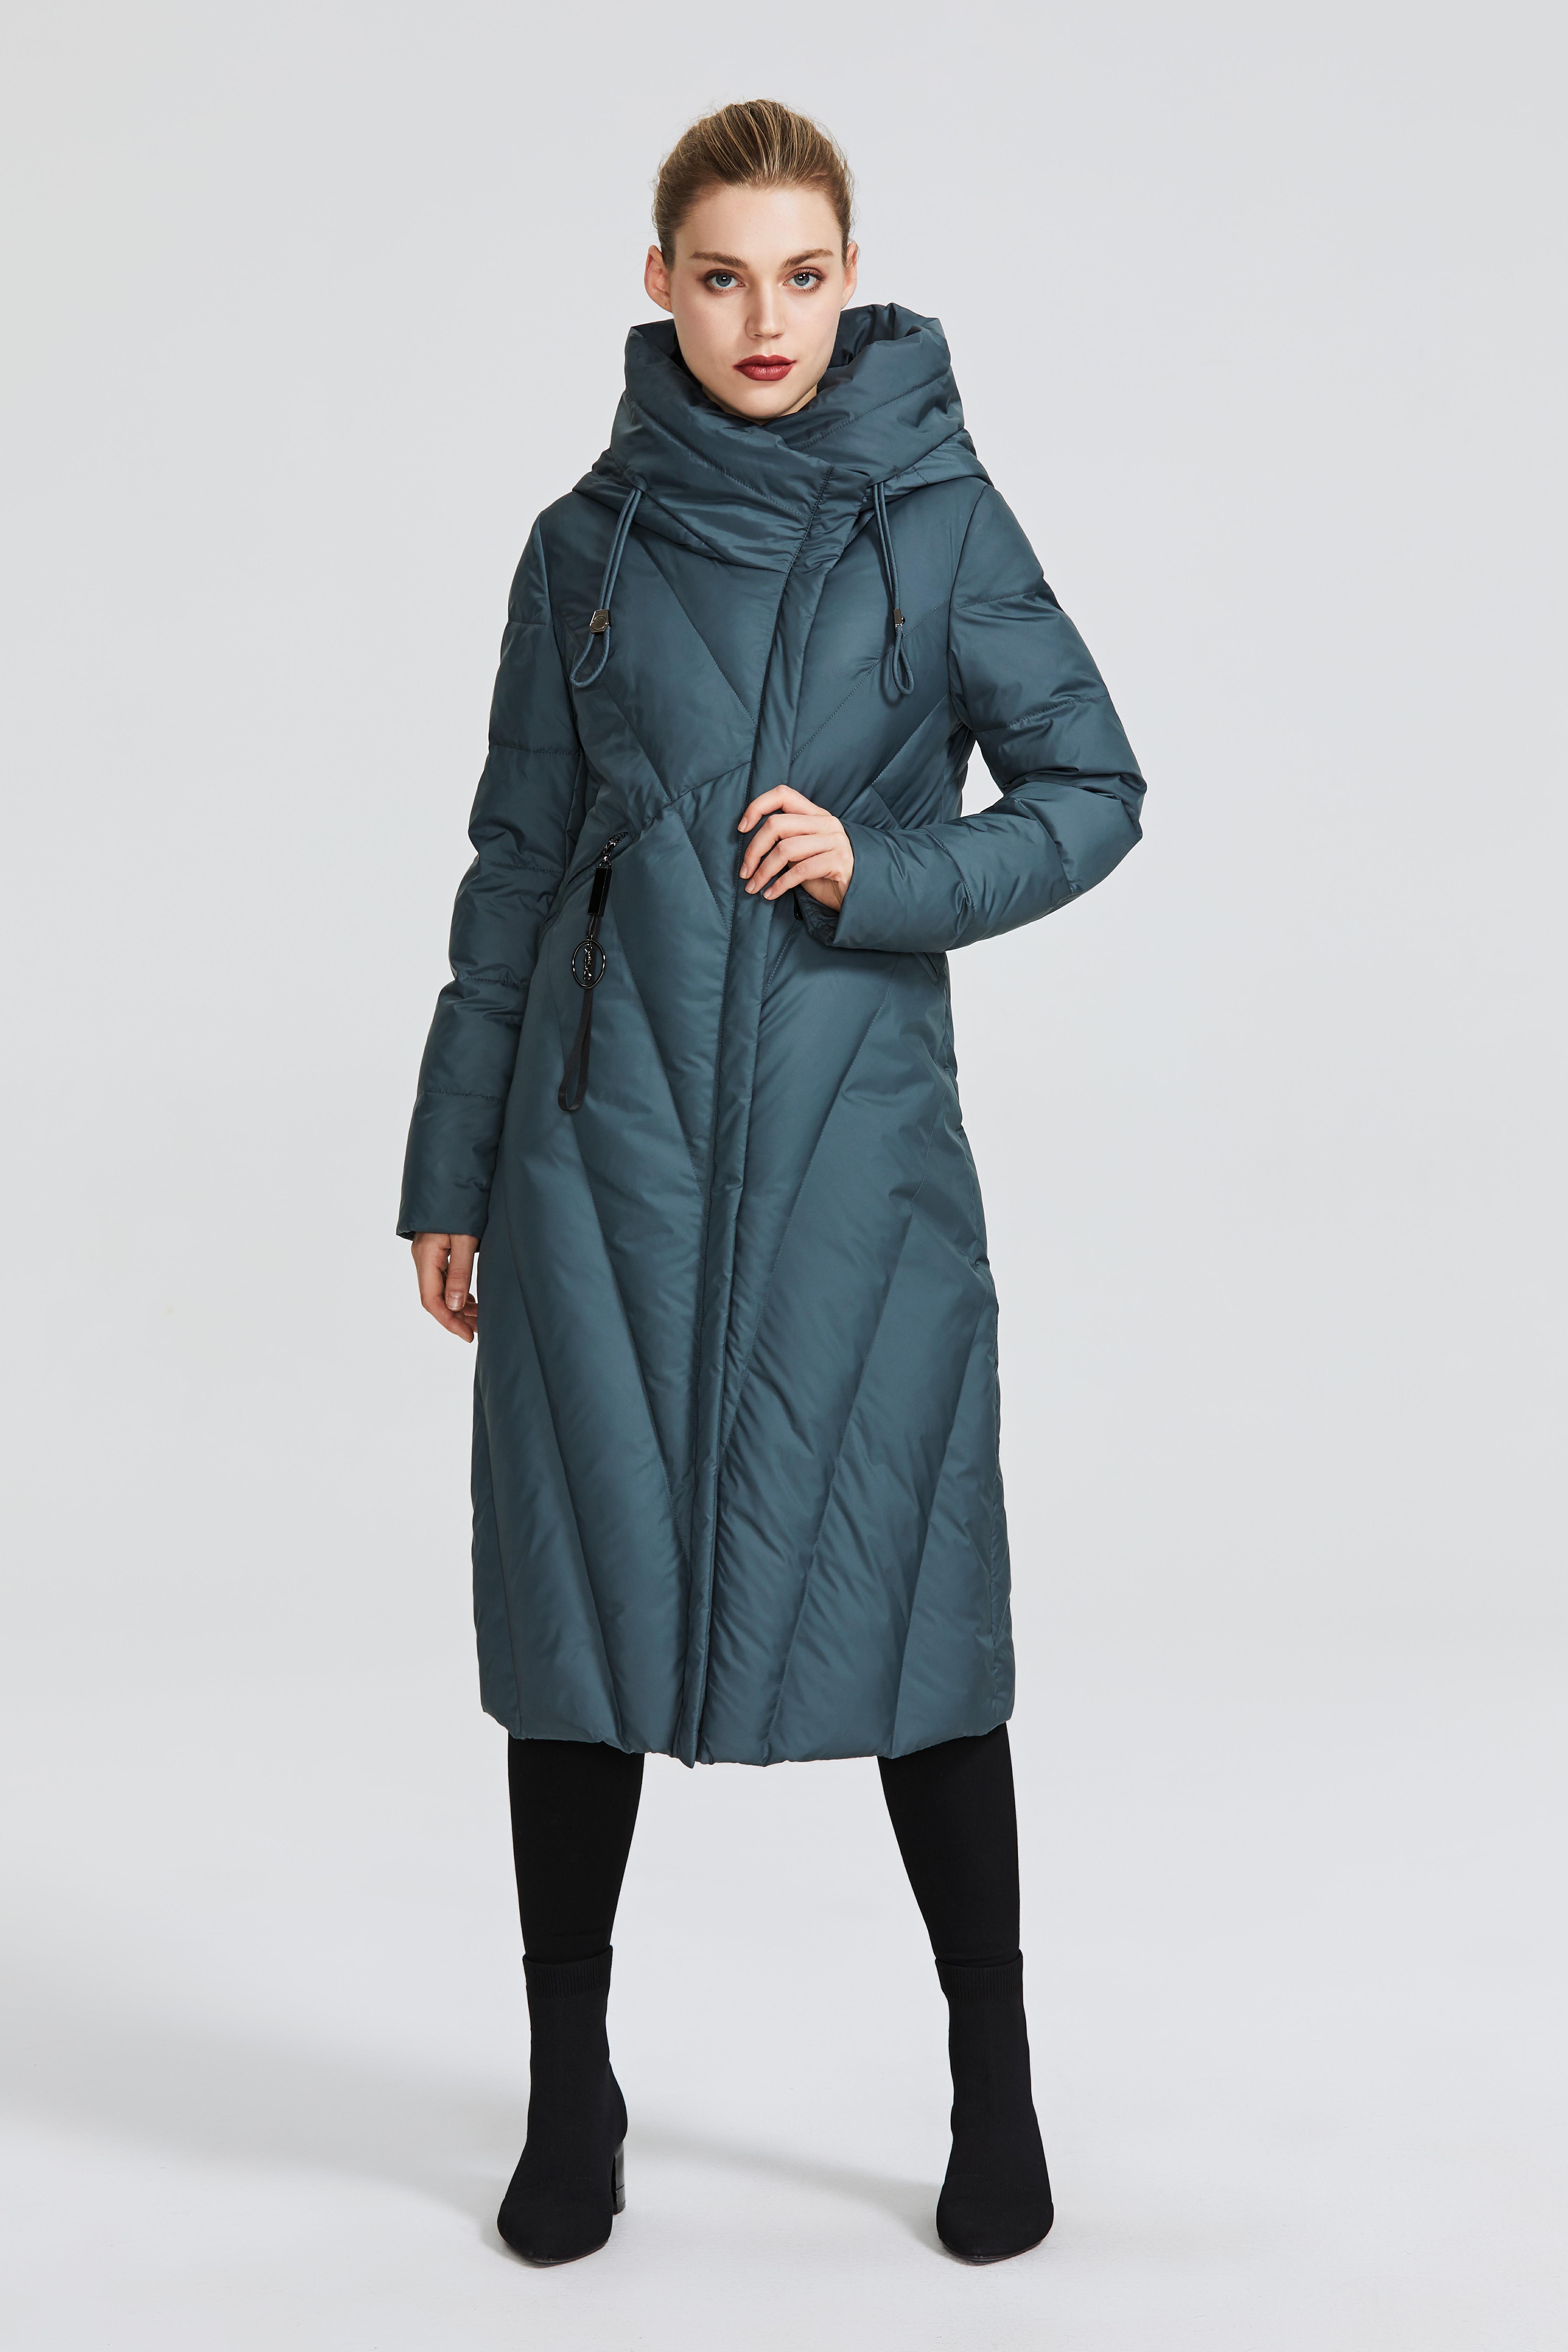 Miegofce D99266 새로운 컬렉션 여성용 코트가 저항 방풍 ​​칼라 여성 파크